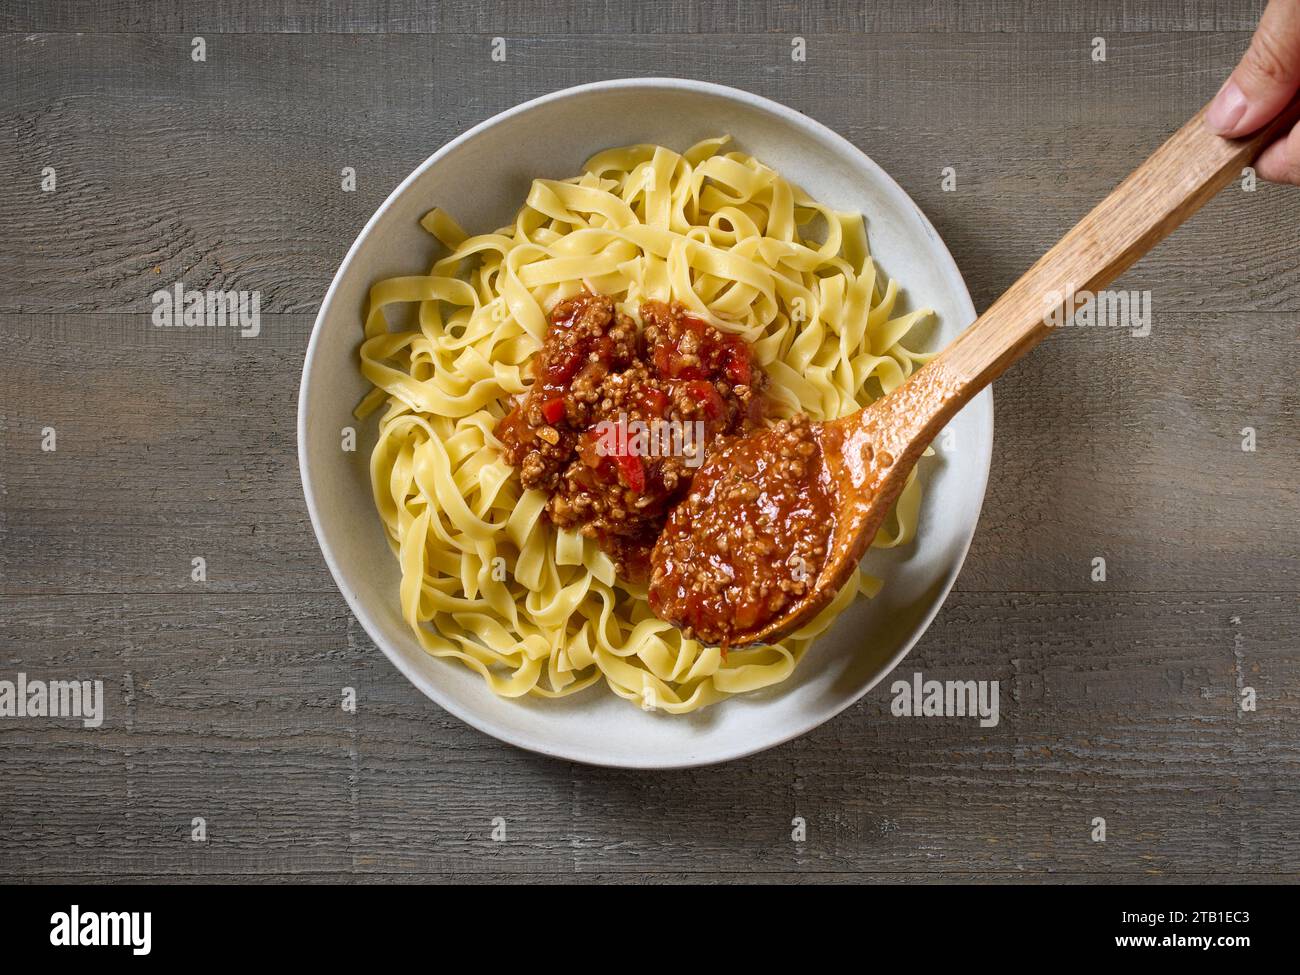 la sauce bologne est ajoutée à un bol de pâtes, vue de dessus Banque D'Images